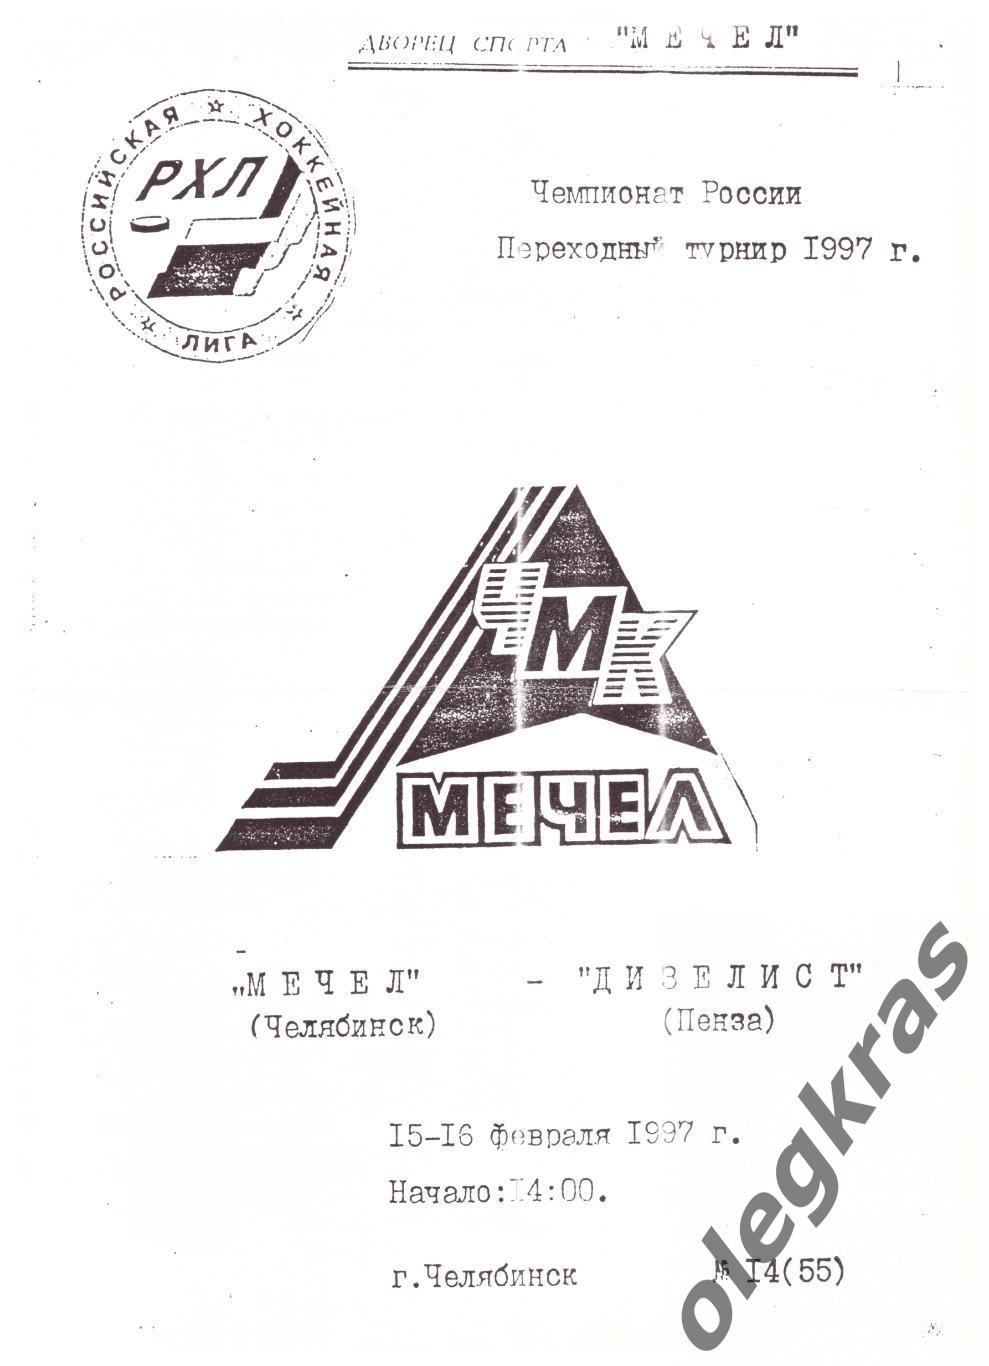 Мечел(Челябинск) - Дизелист(Пенза) - 15-16 февраля 1997 года.